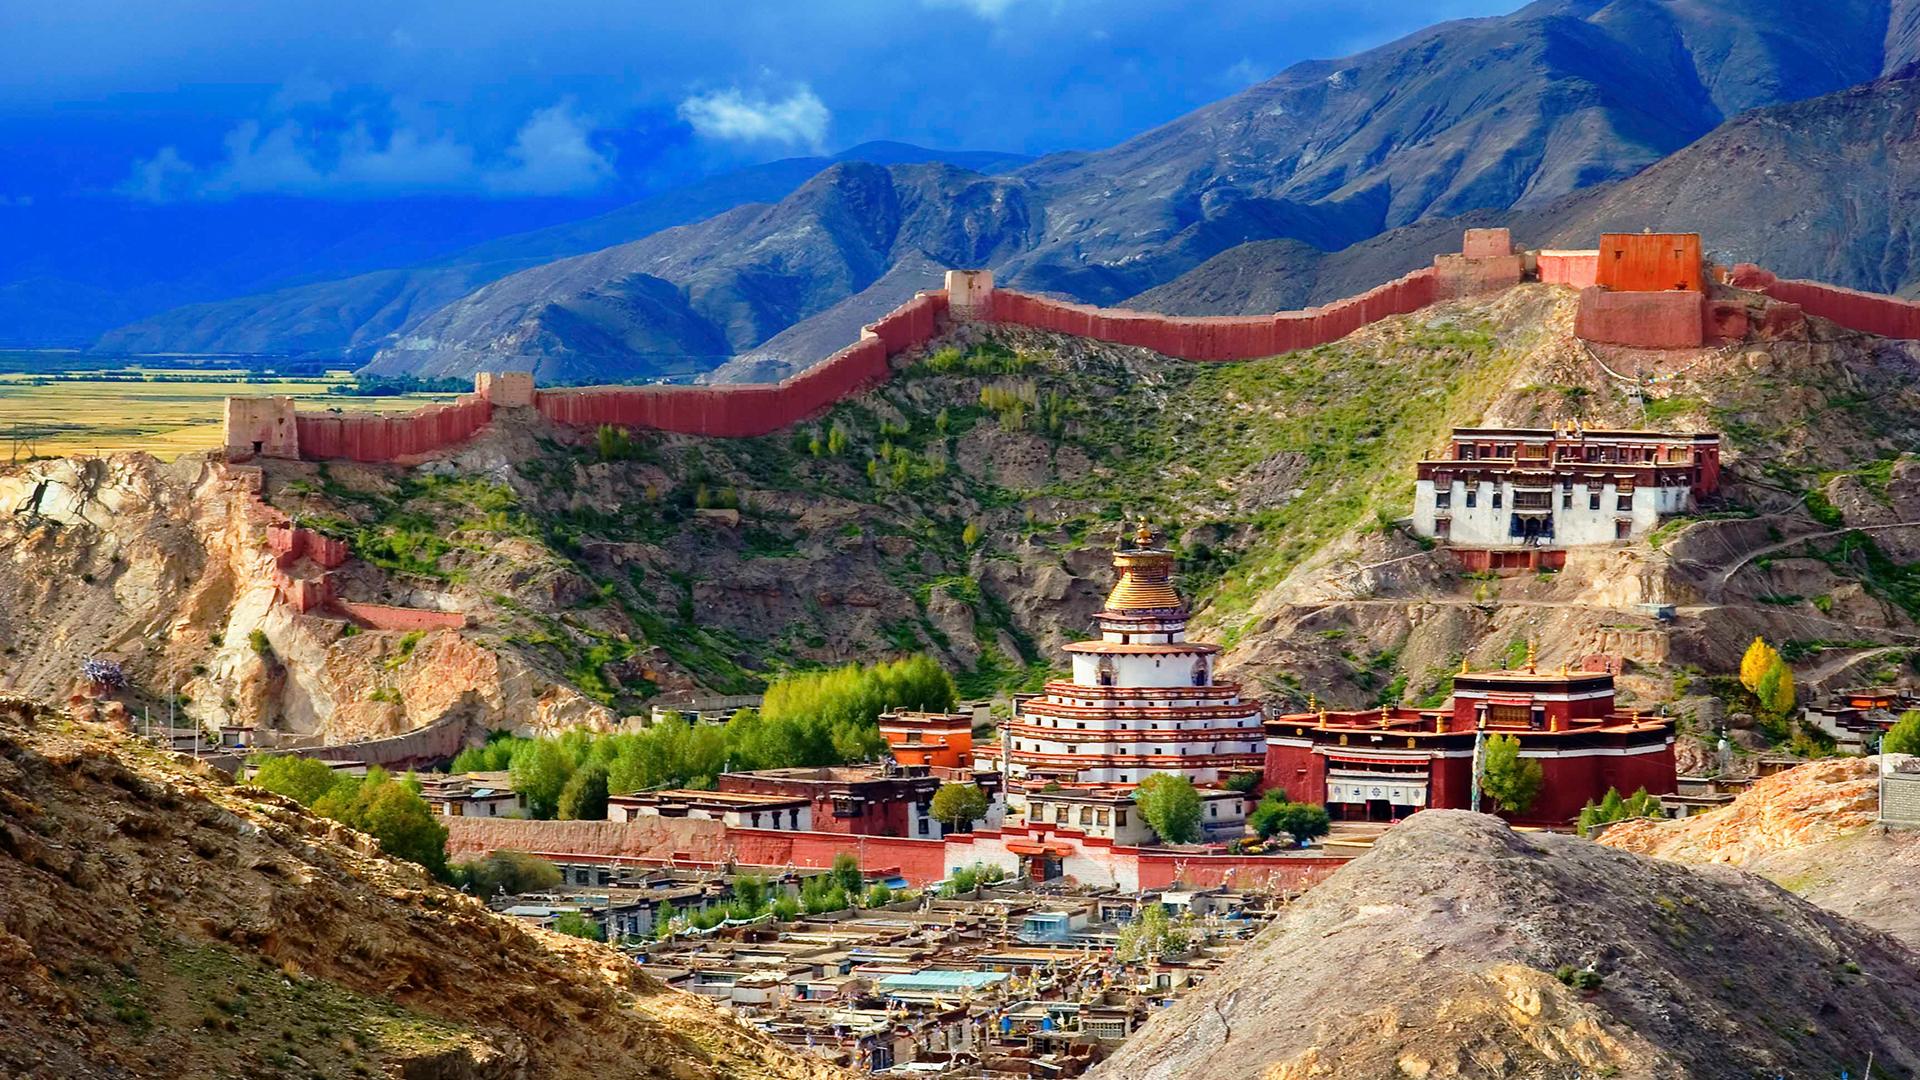 discover-nepal-tibet-14-day-himalayan-tour-of-kathmandu-unesco-world